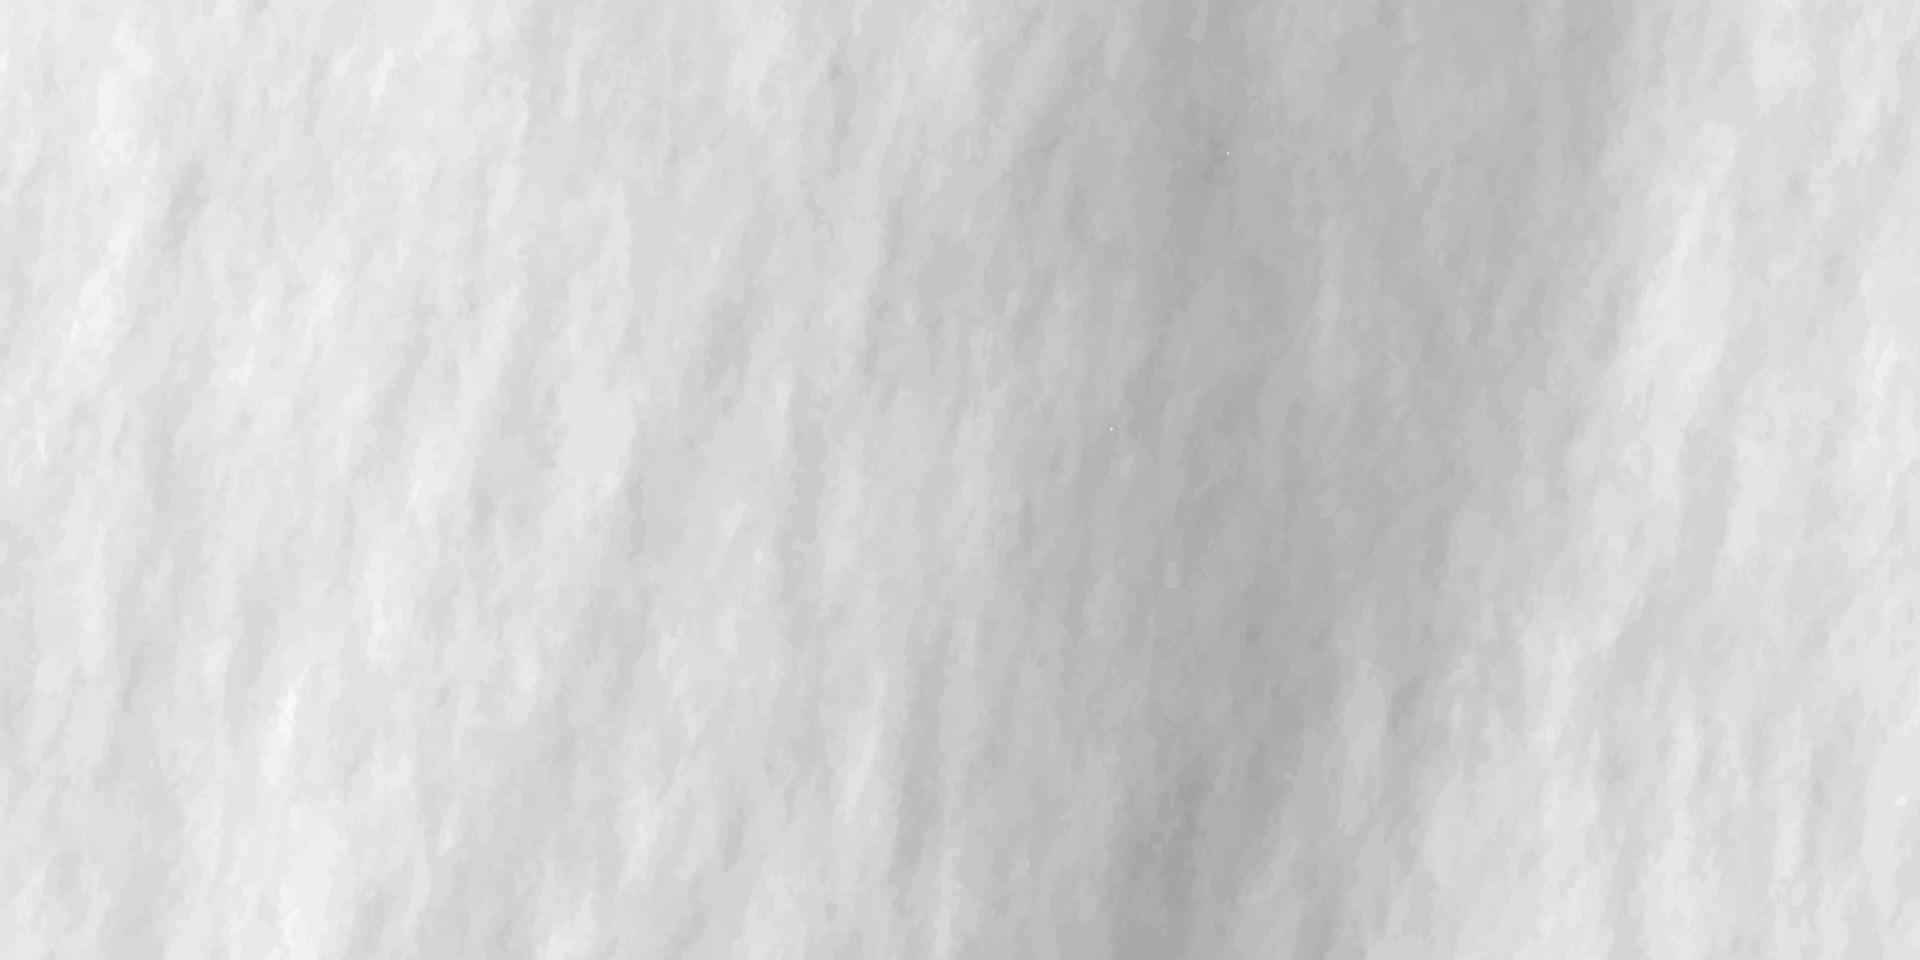 wit grunge achtergrond met ruimte voor tekst, abstract waterverf wit grunge achtergrond schilderen, structuur van chips, scheuren, krassen, slijtage, stof, aarde, vector, illustratie vector